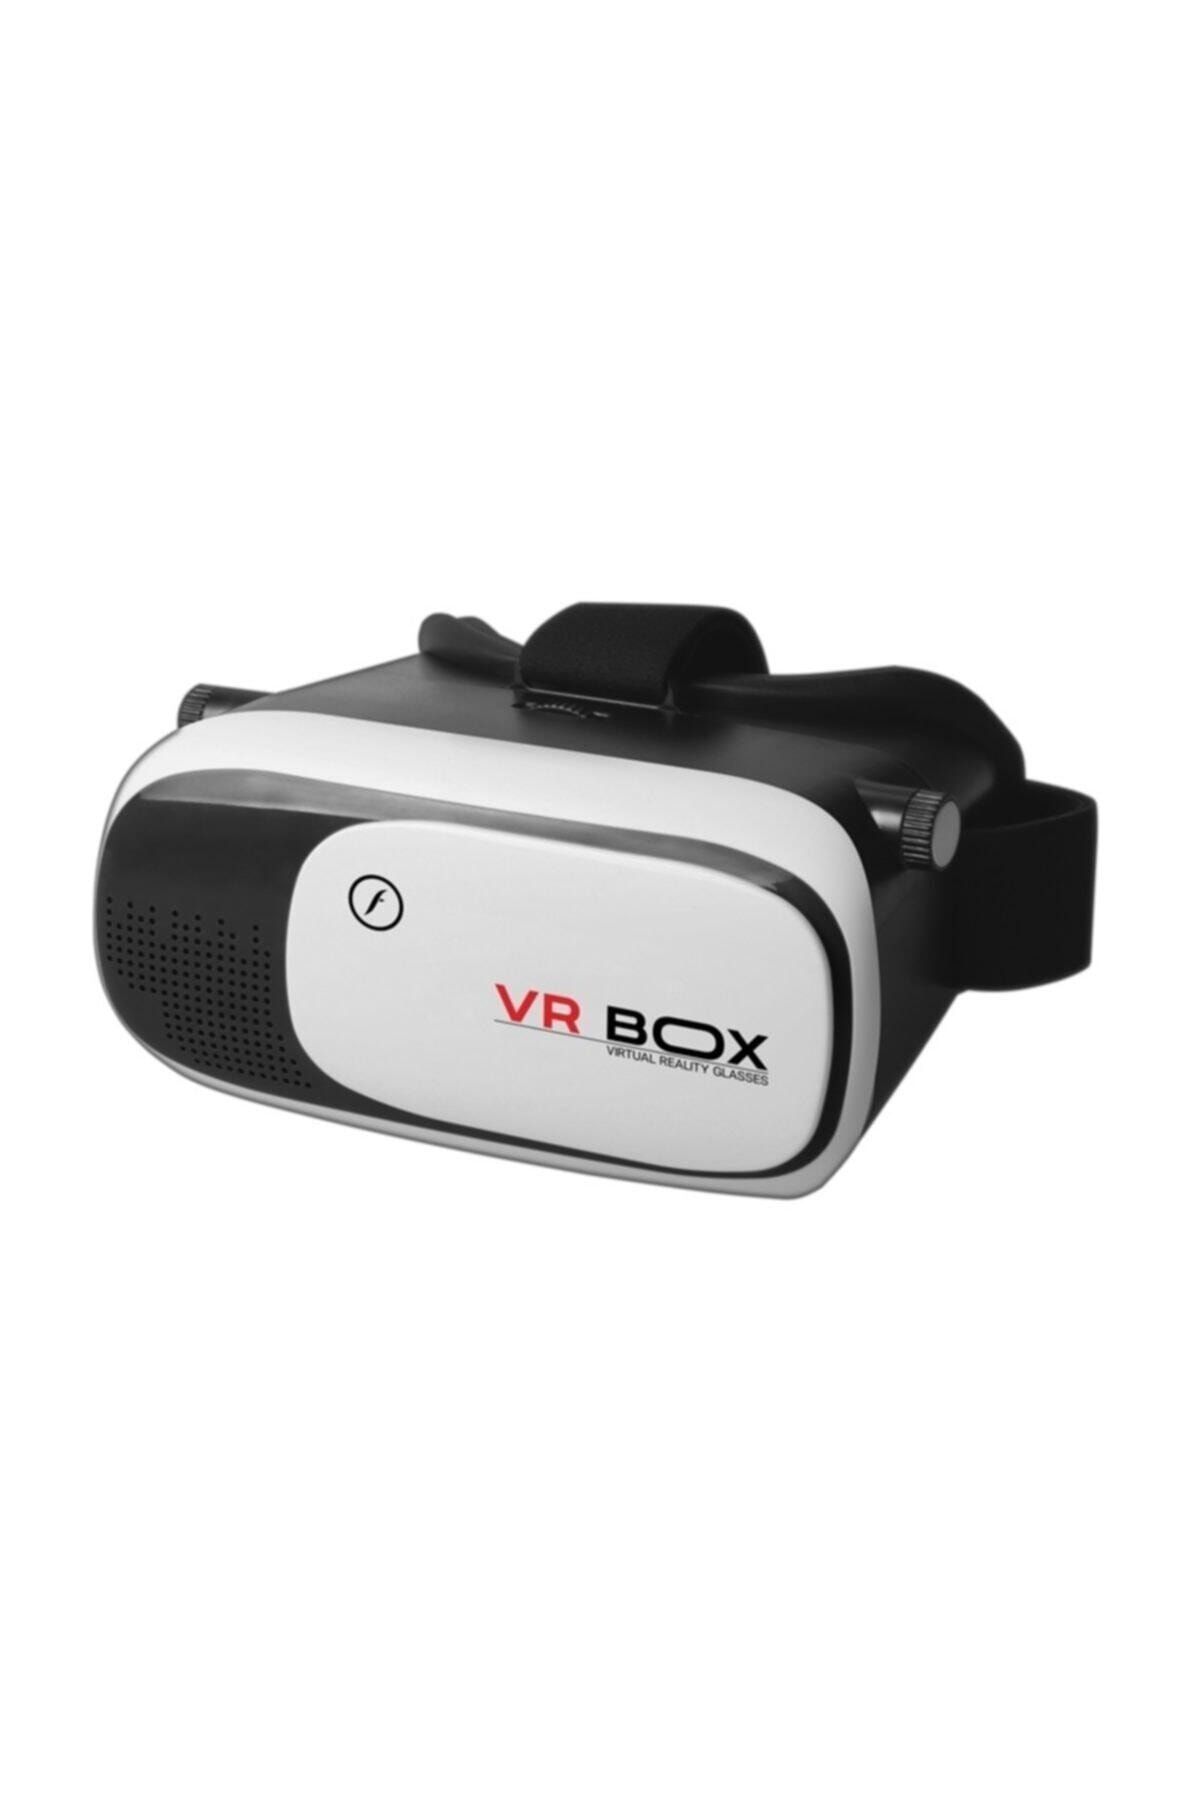 Vr Box Sanal Gerçeklik Gözlüğü Vr 3d Fa-8100vrb